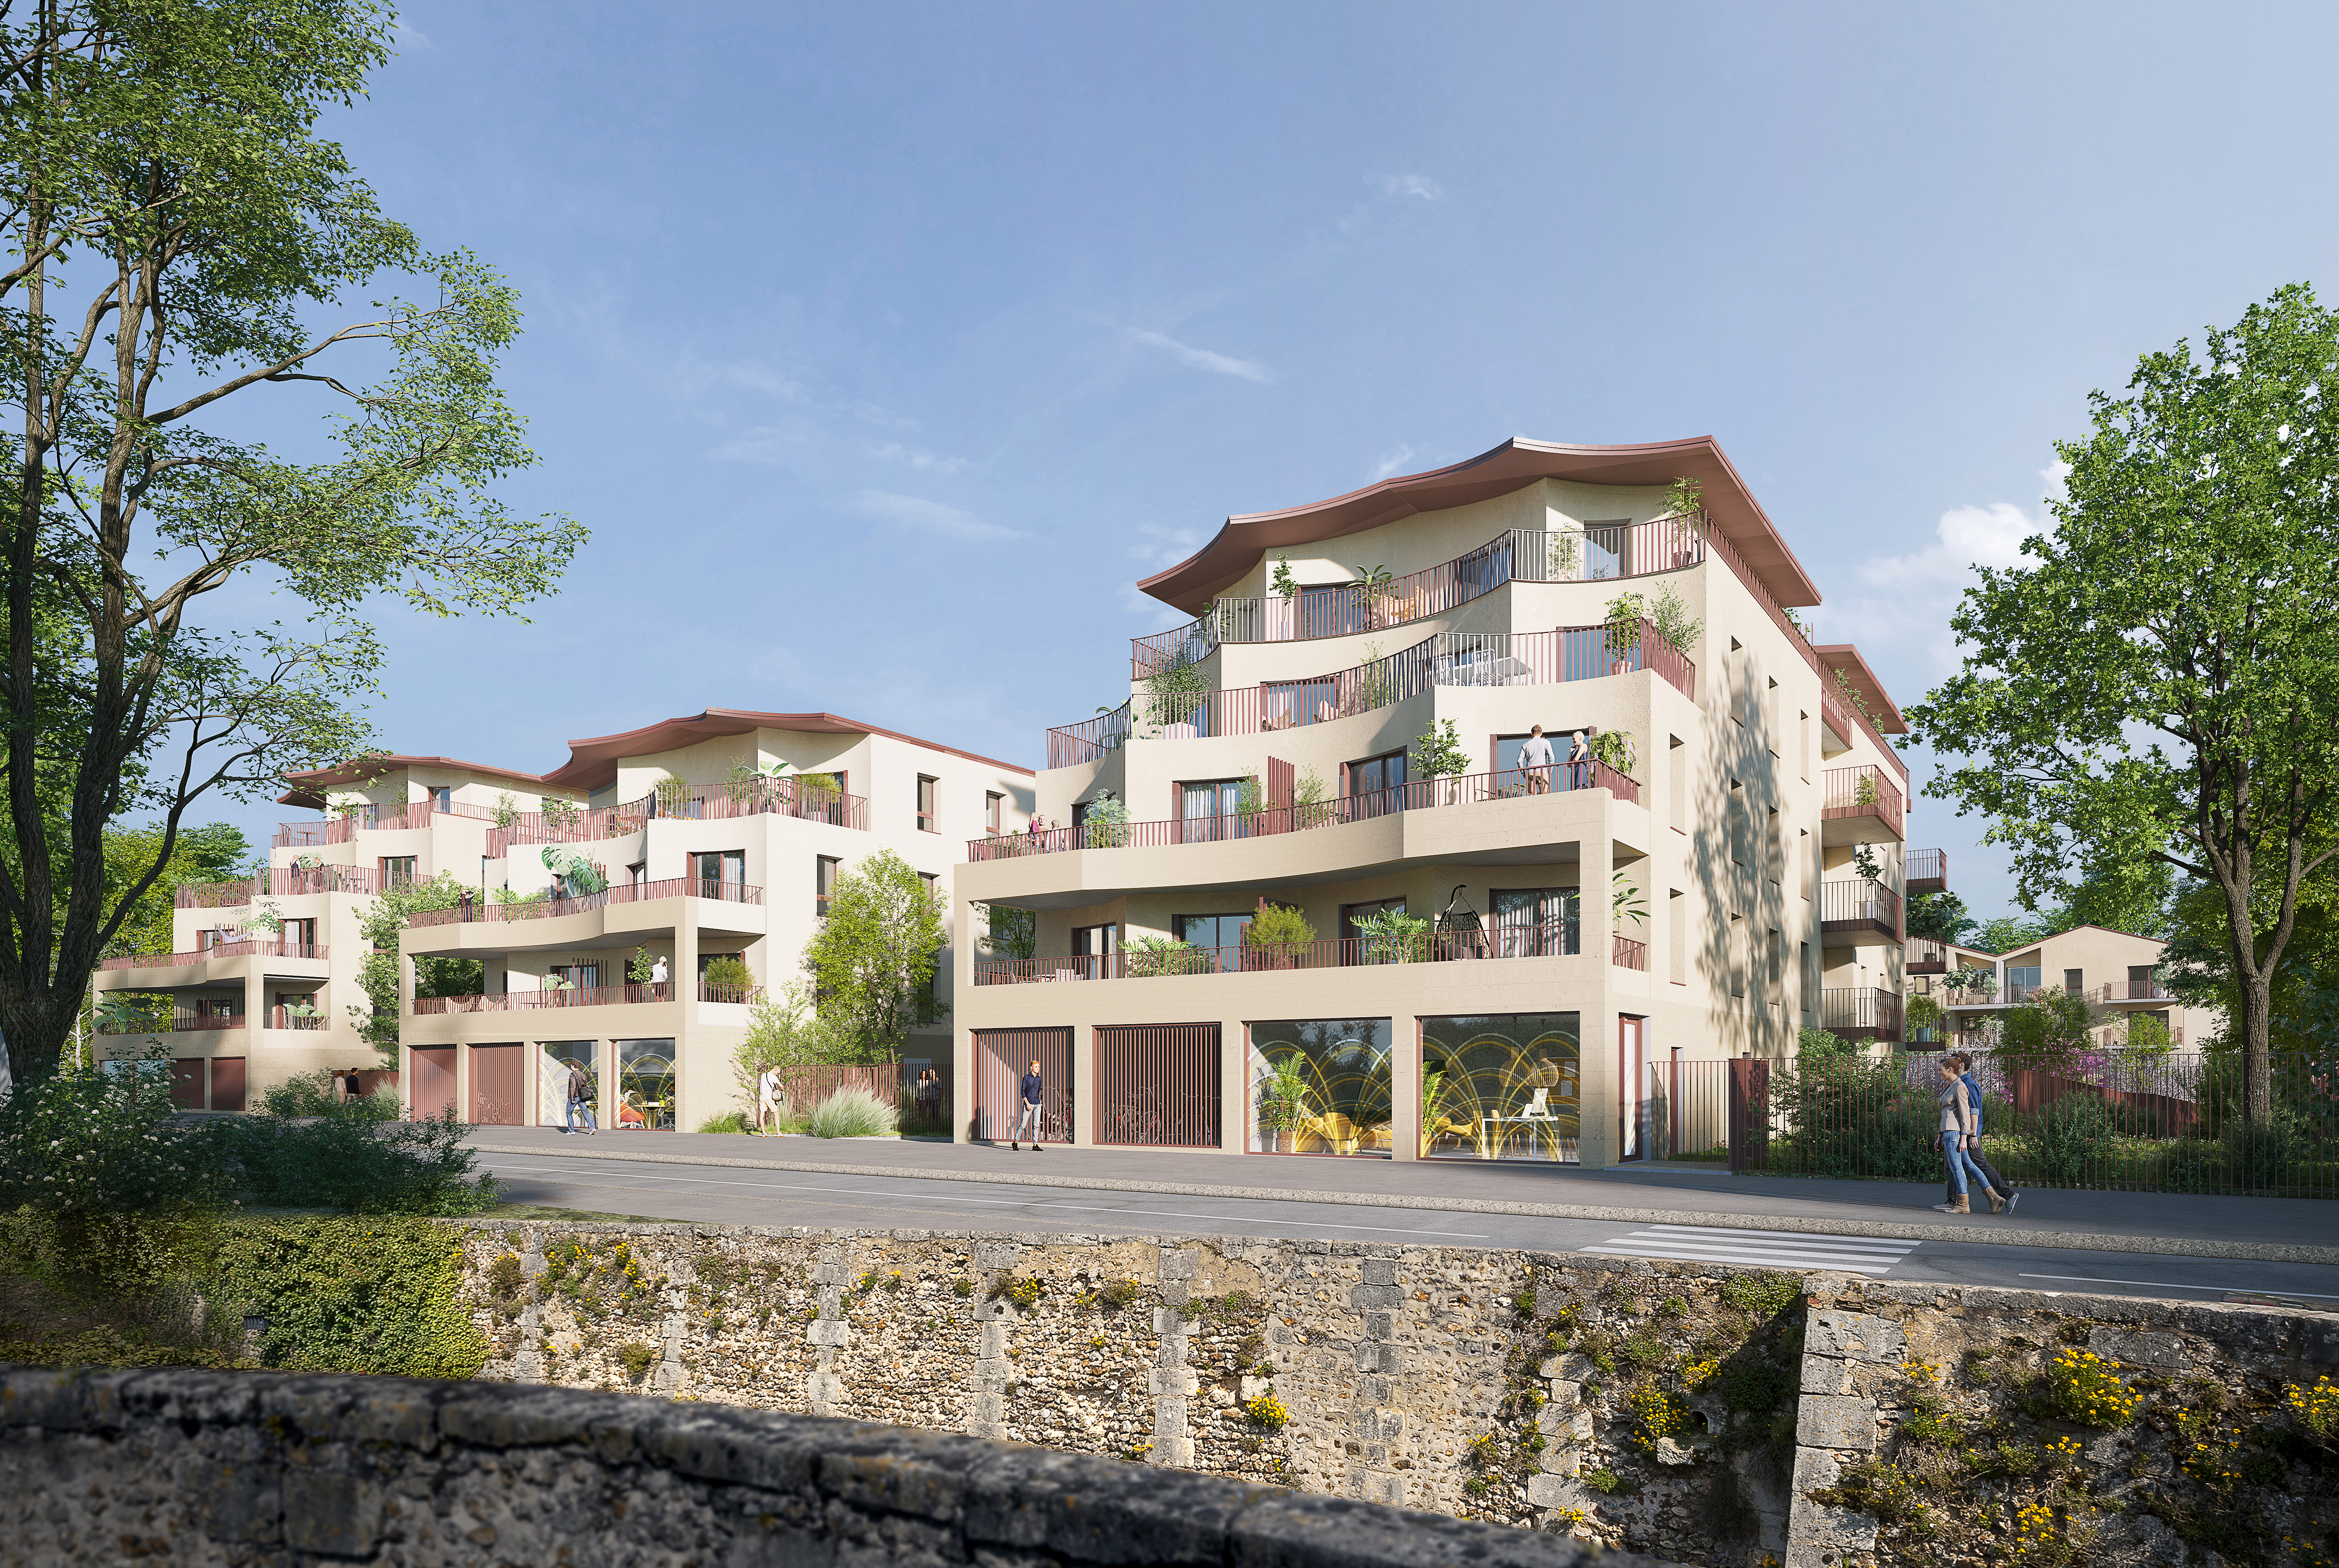 Nouveau programme immobilier à Chartres sur les bords de l'Eure